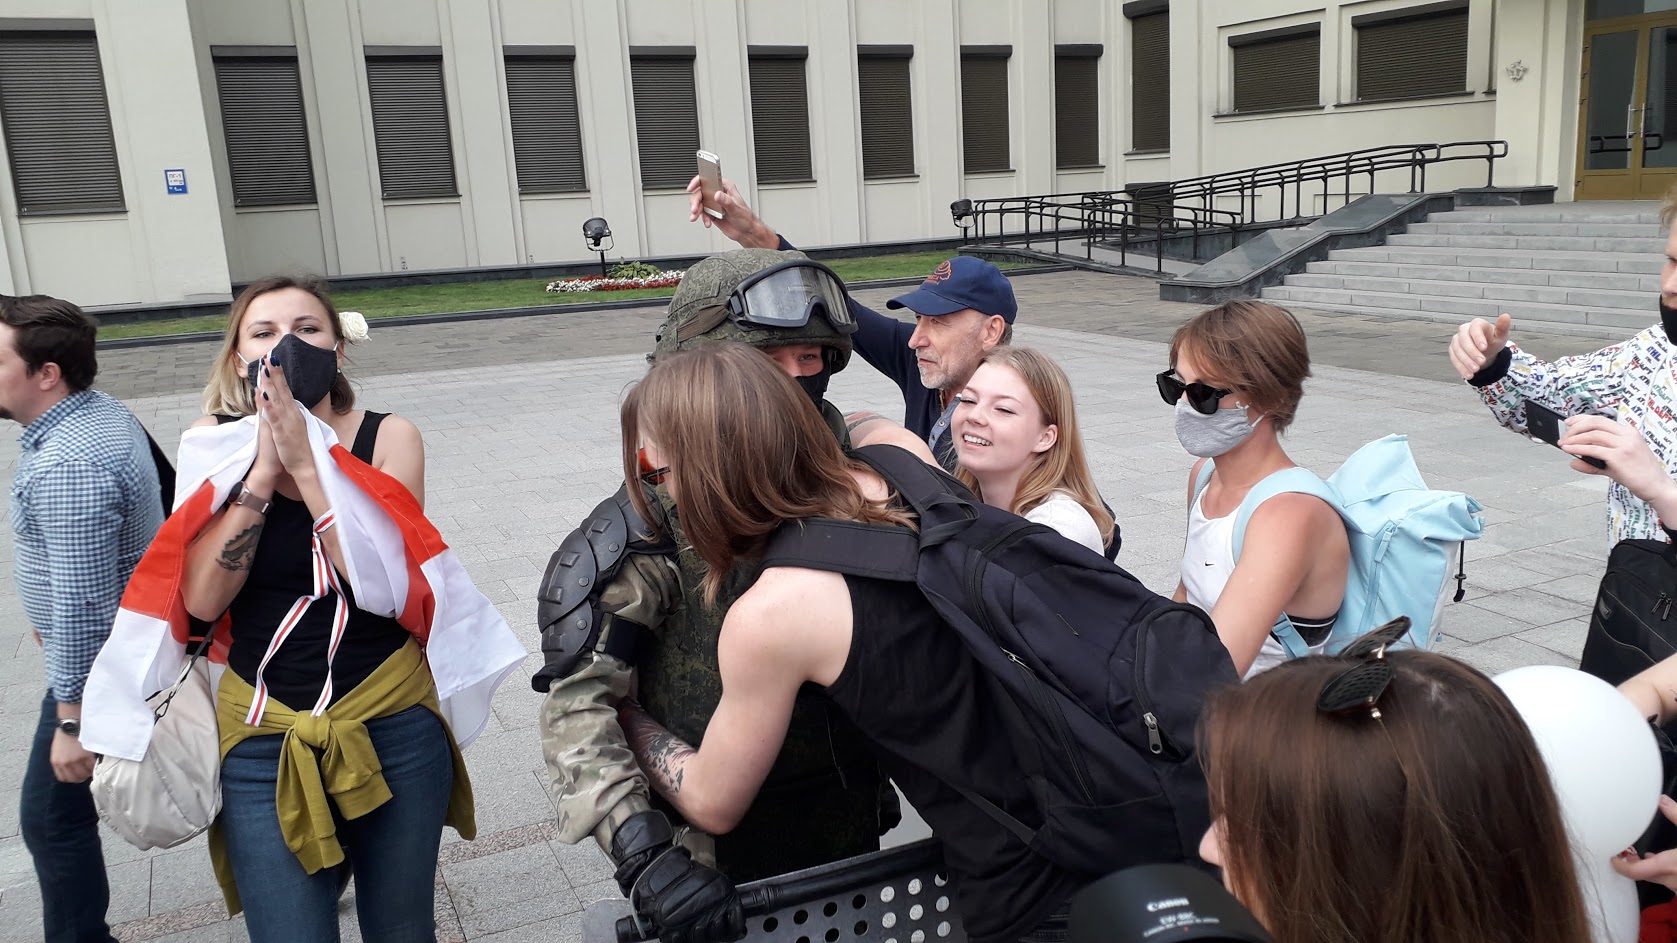 Белорусы в Варшаве: когда внуки спросят, покажем им альбом с нашими партизанами